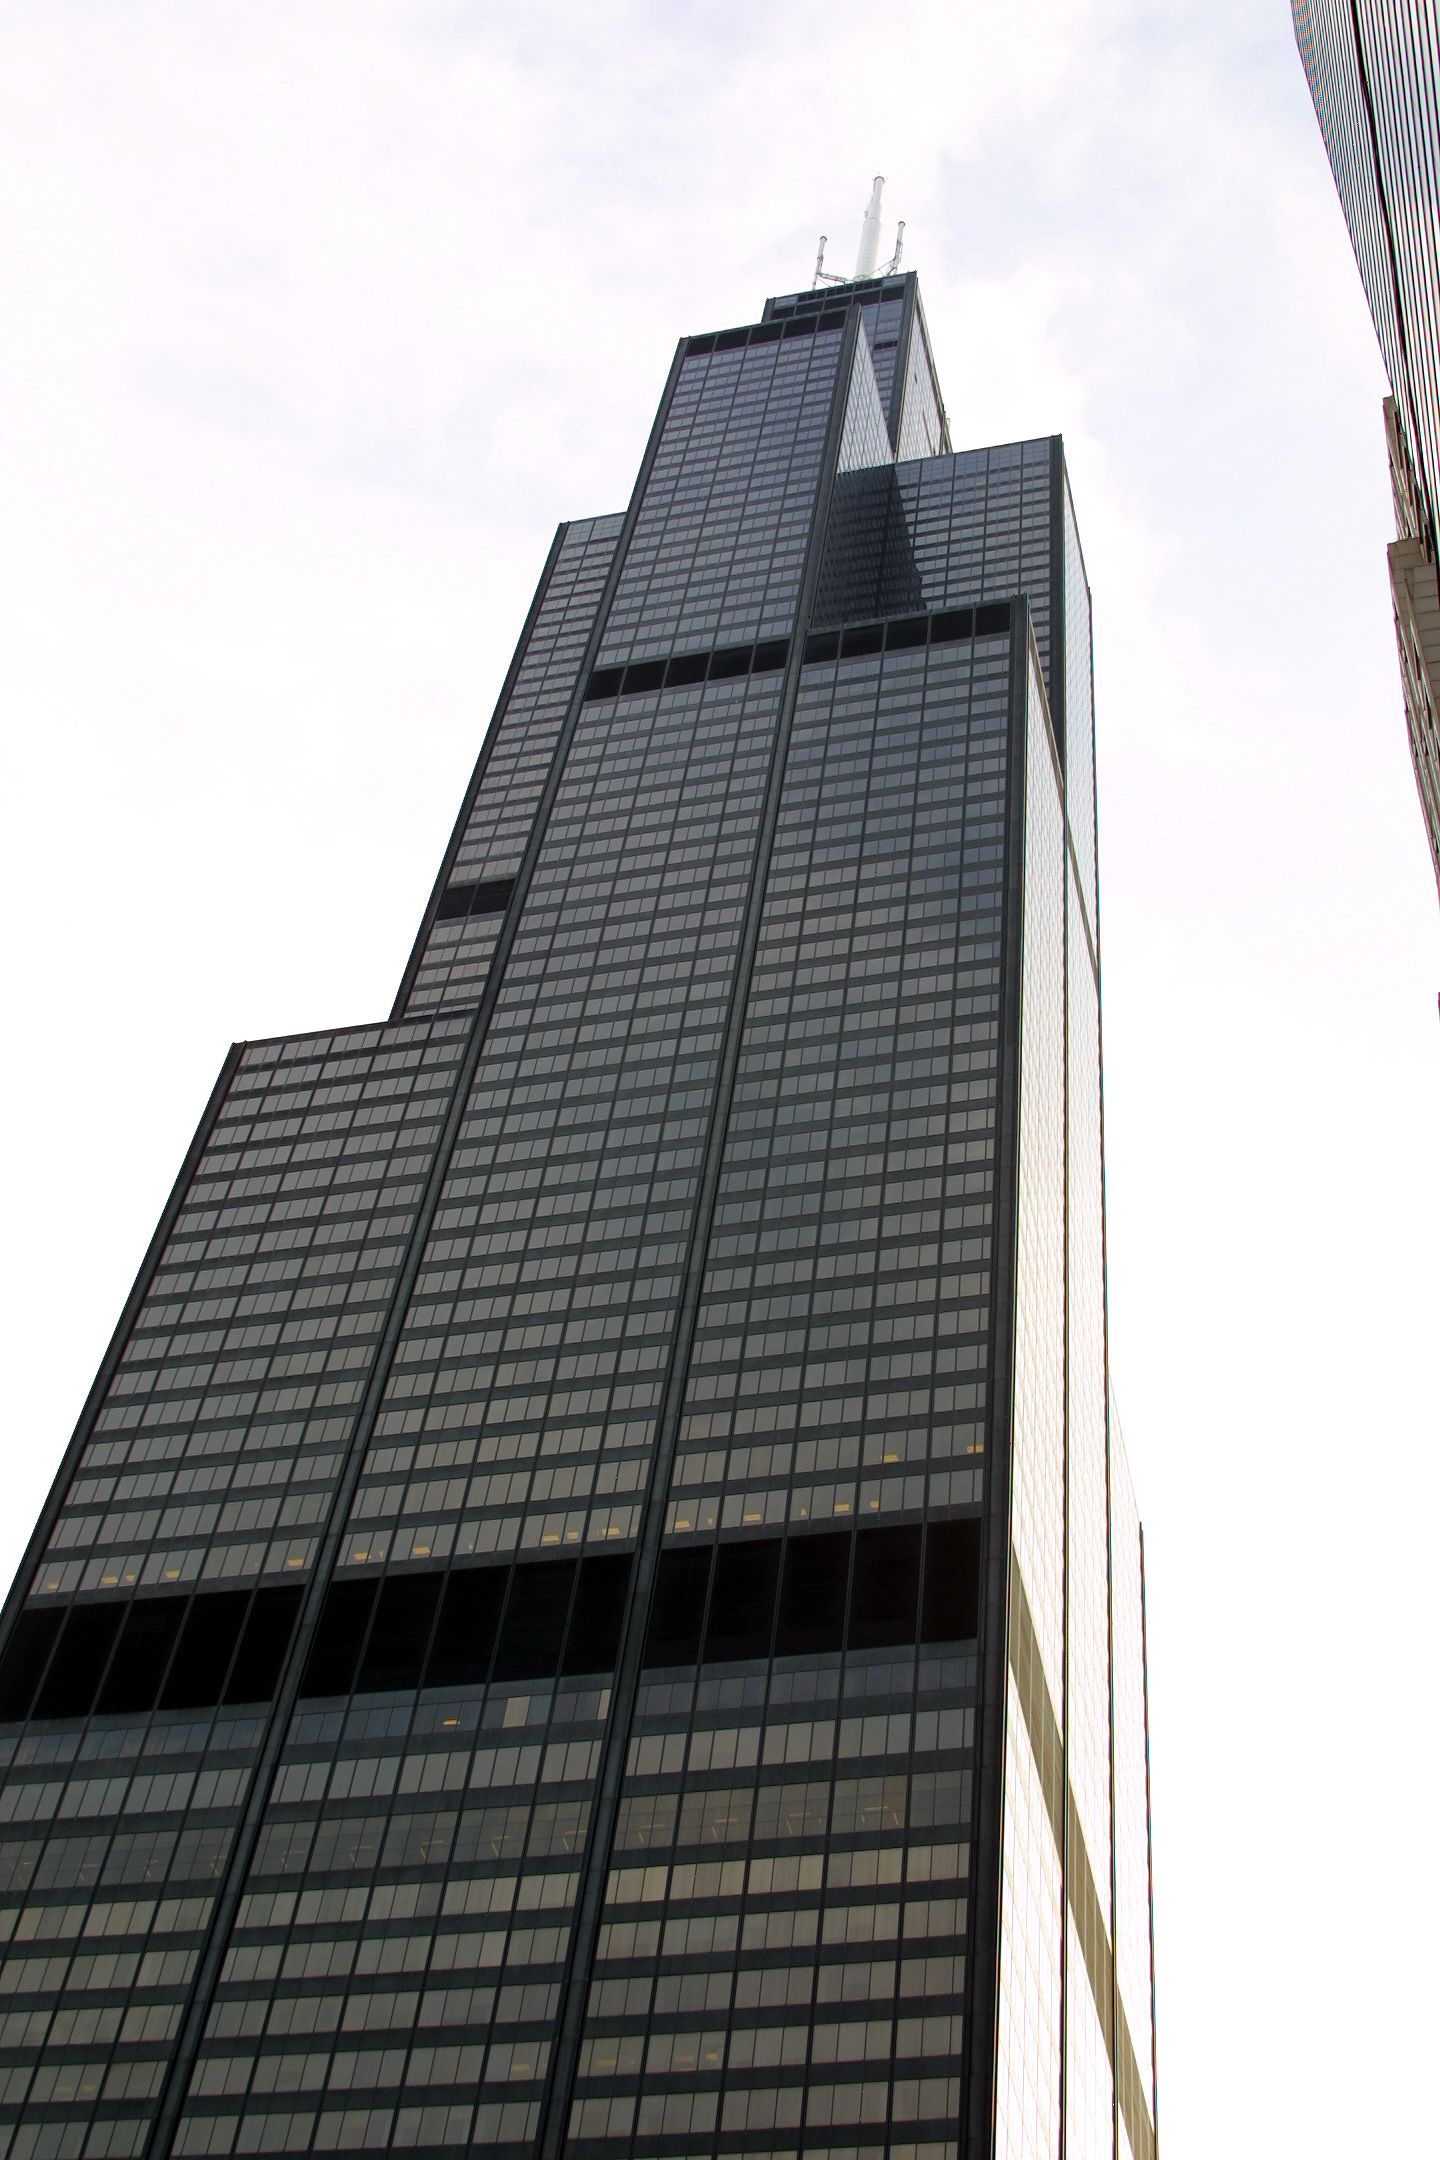 希尔斯大厦(sears tower) 是位于美国伊利诺伊州芝加哥的一幢摩天大楼